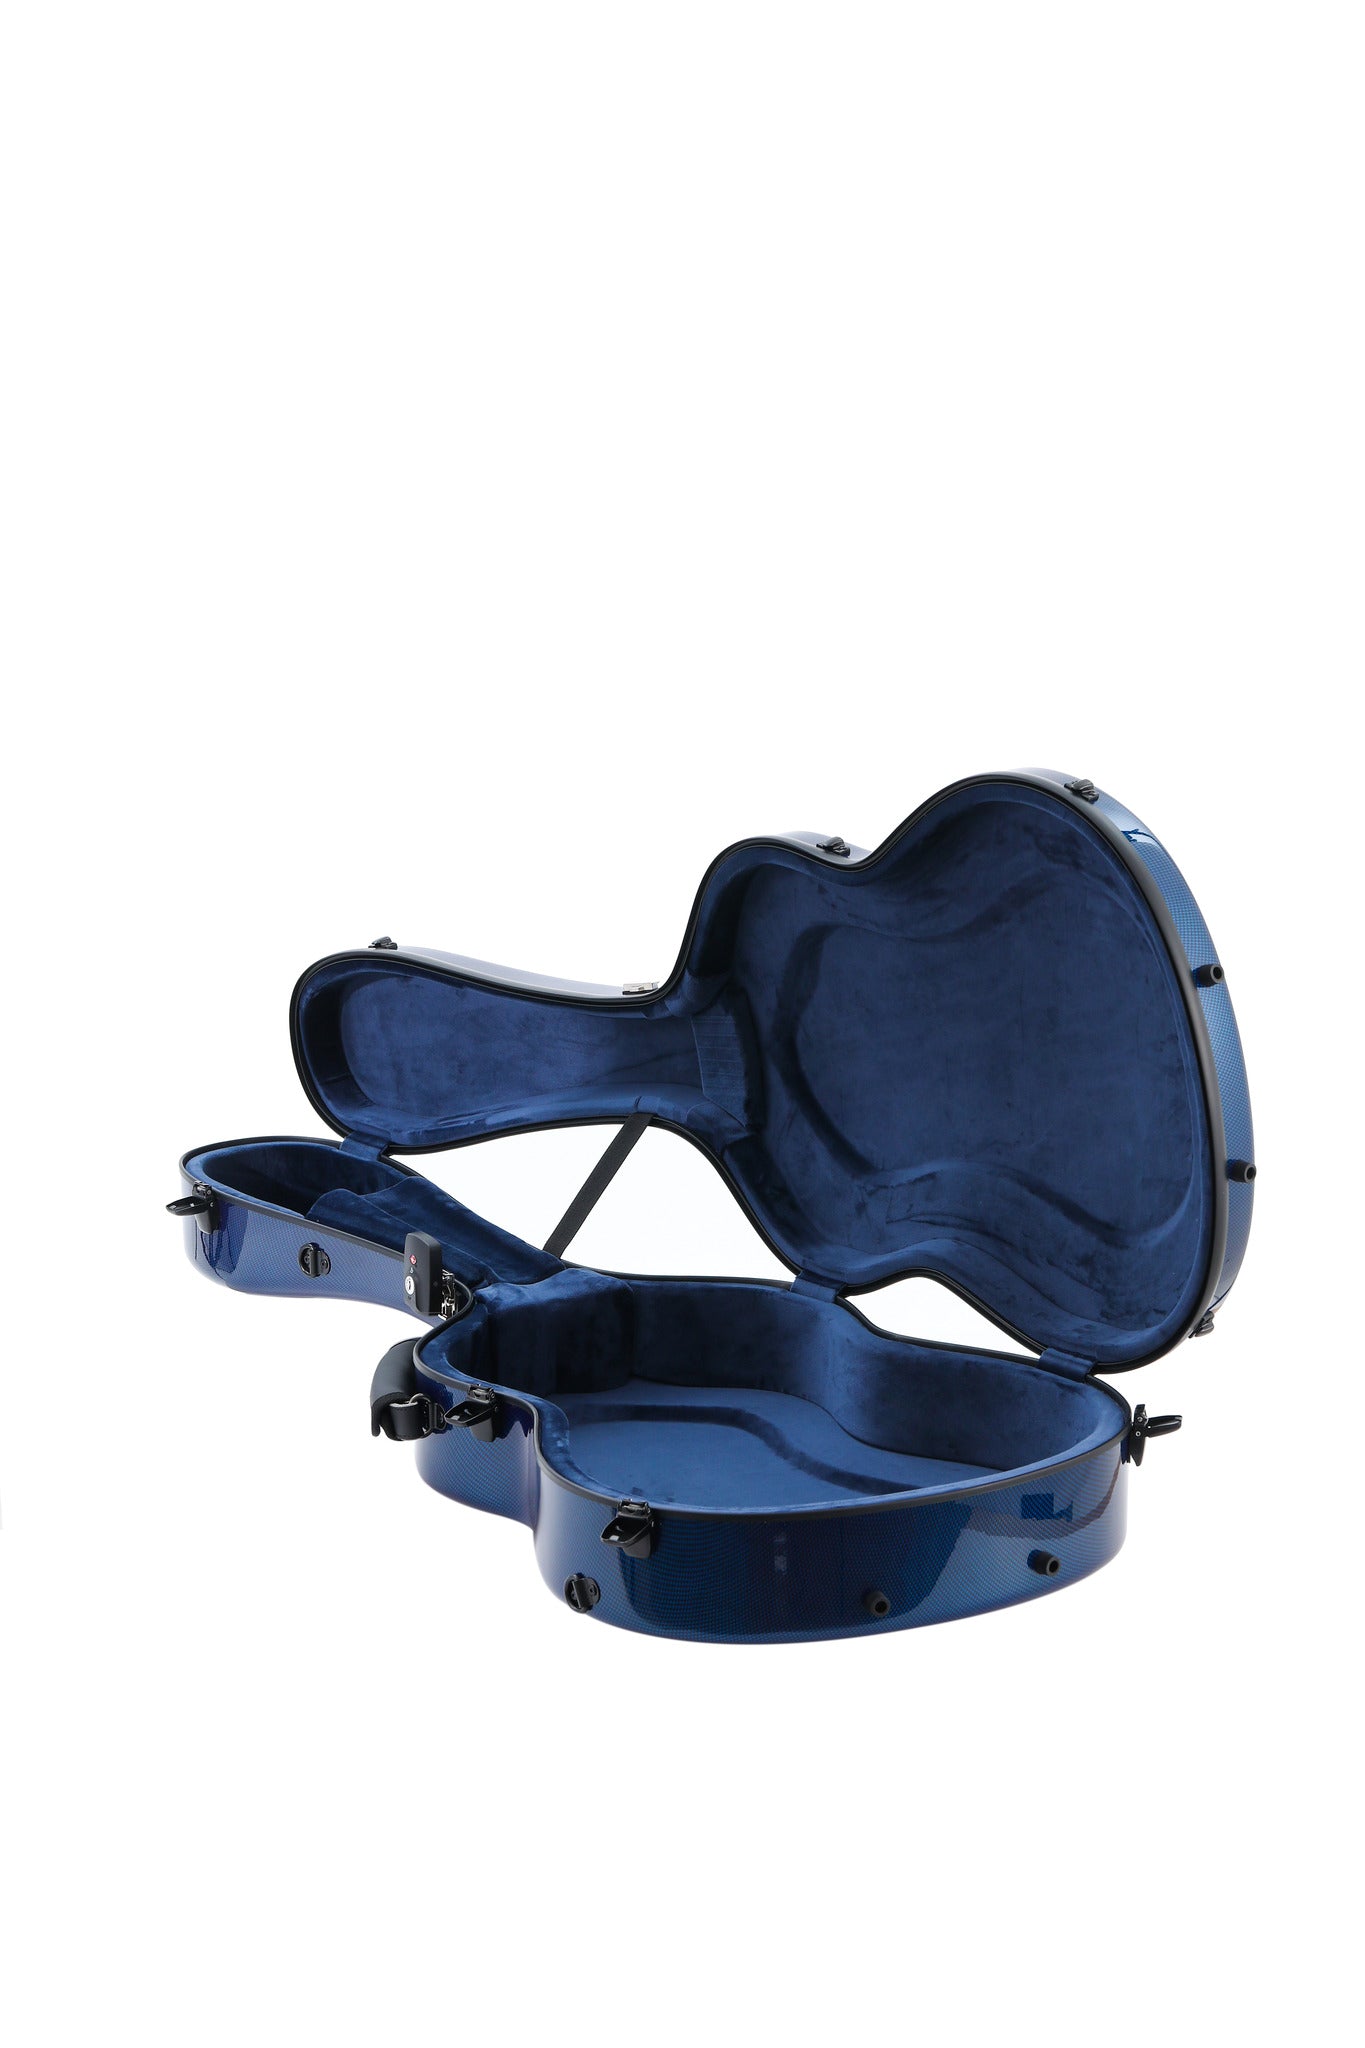 Estuche Alba Guitar Beads Patrón de Carbono Azul Brillo para Guitarra Clásica Acústica, Estuche para guitarra flamenca